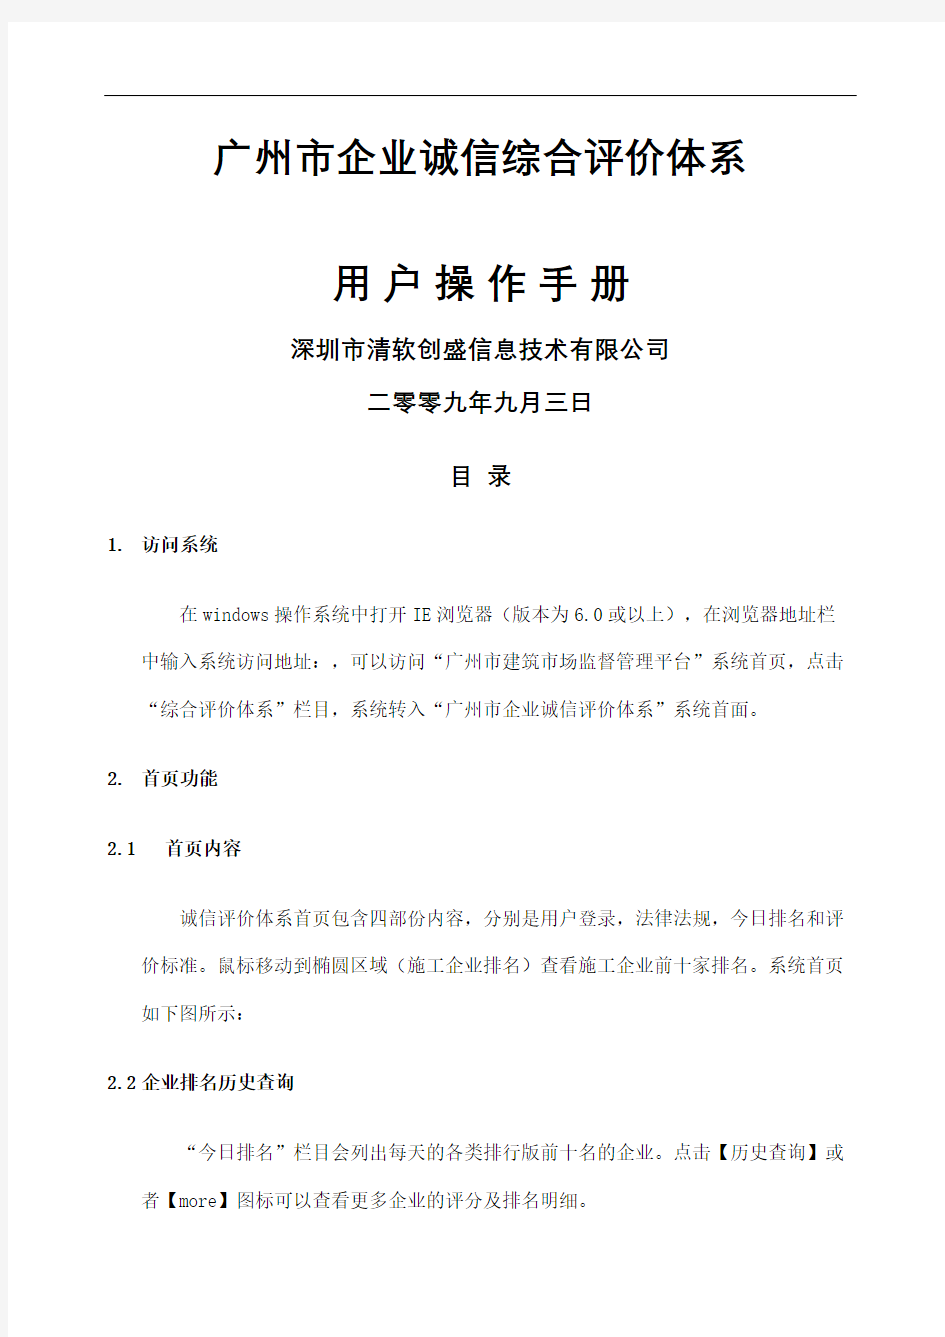 广州建筑企业诚信排名评价体系用户操作手册上定稿版